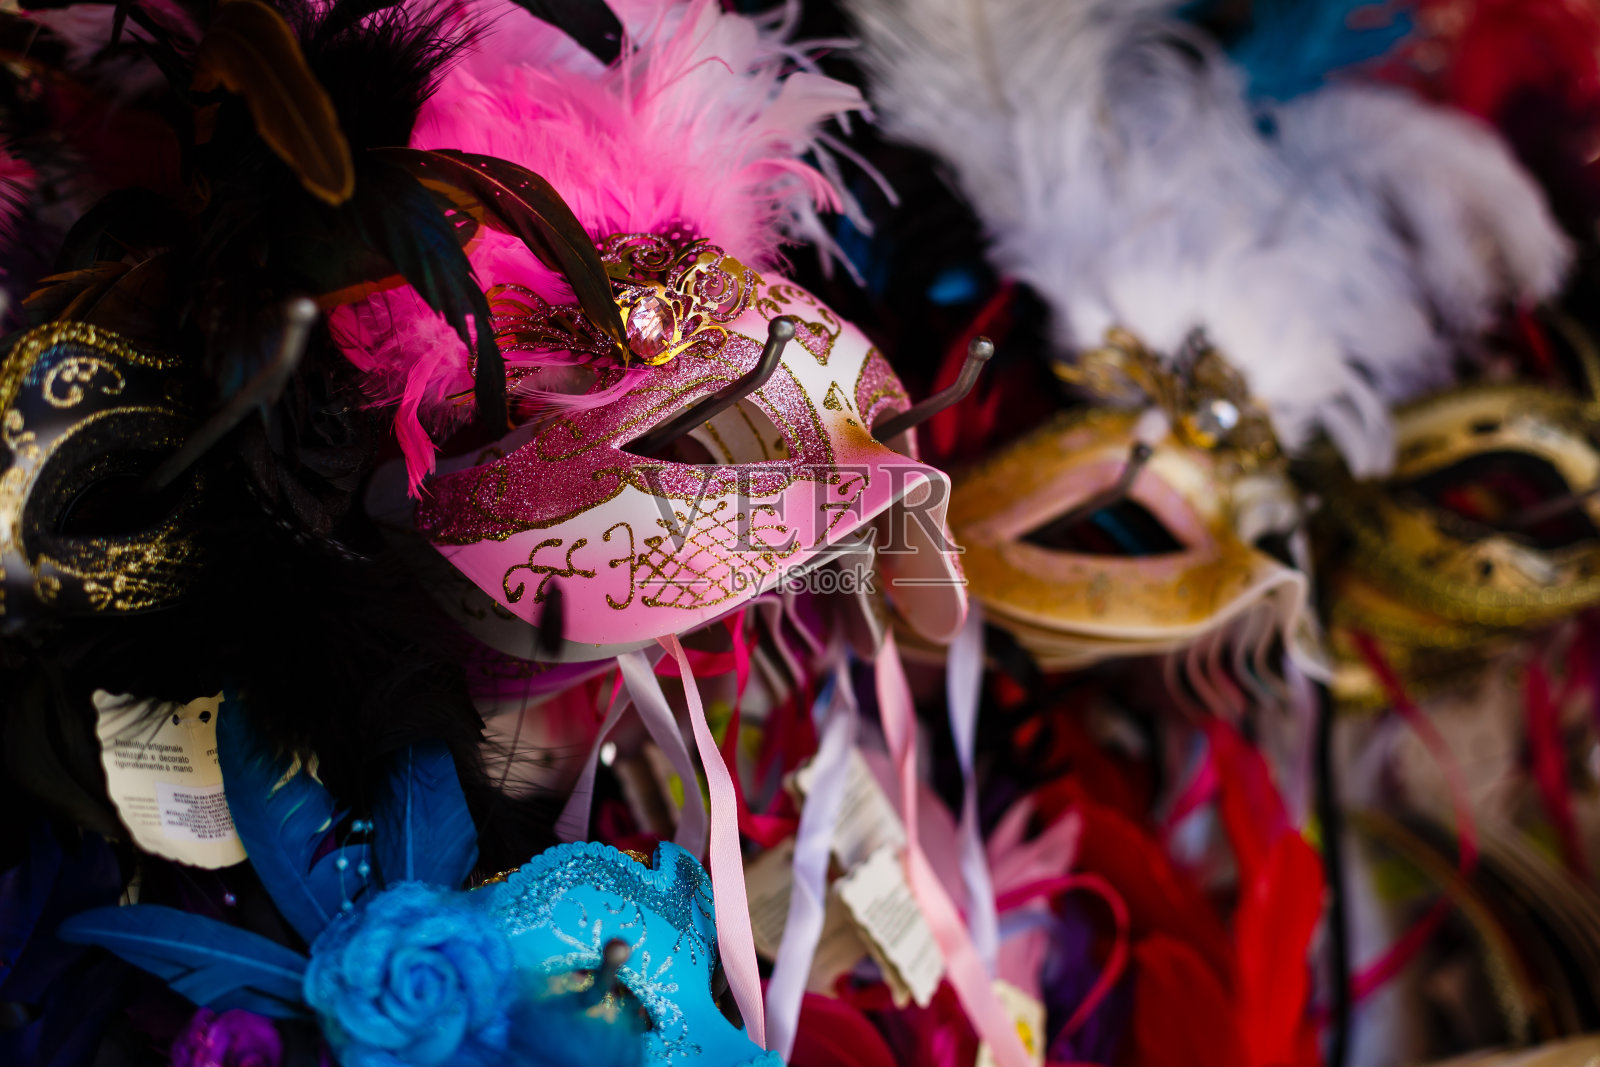 威尼斯商店里陈列的威尼斯面具。威尼斯一年一度的狂欢节是欧洲最著名的狂欢节之一。它的标志是威尼斯面具照片摄影图片